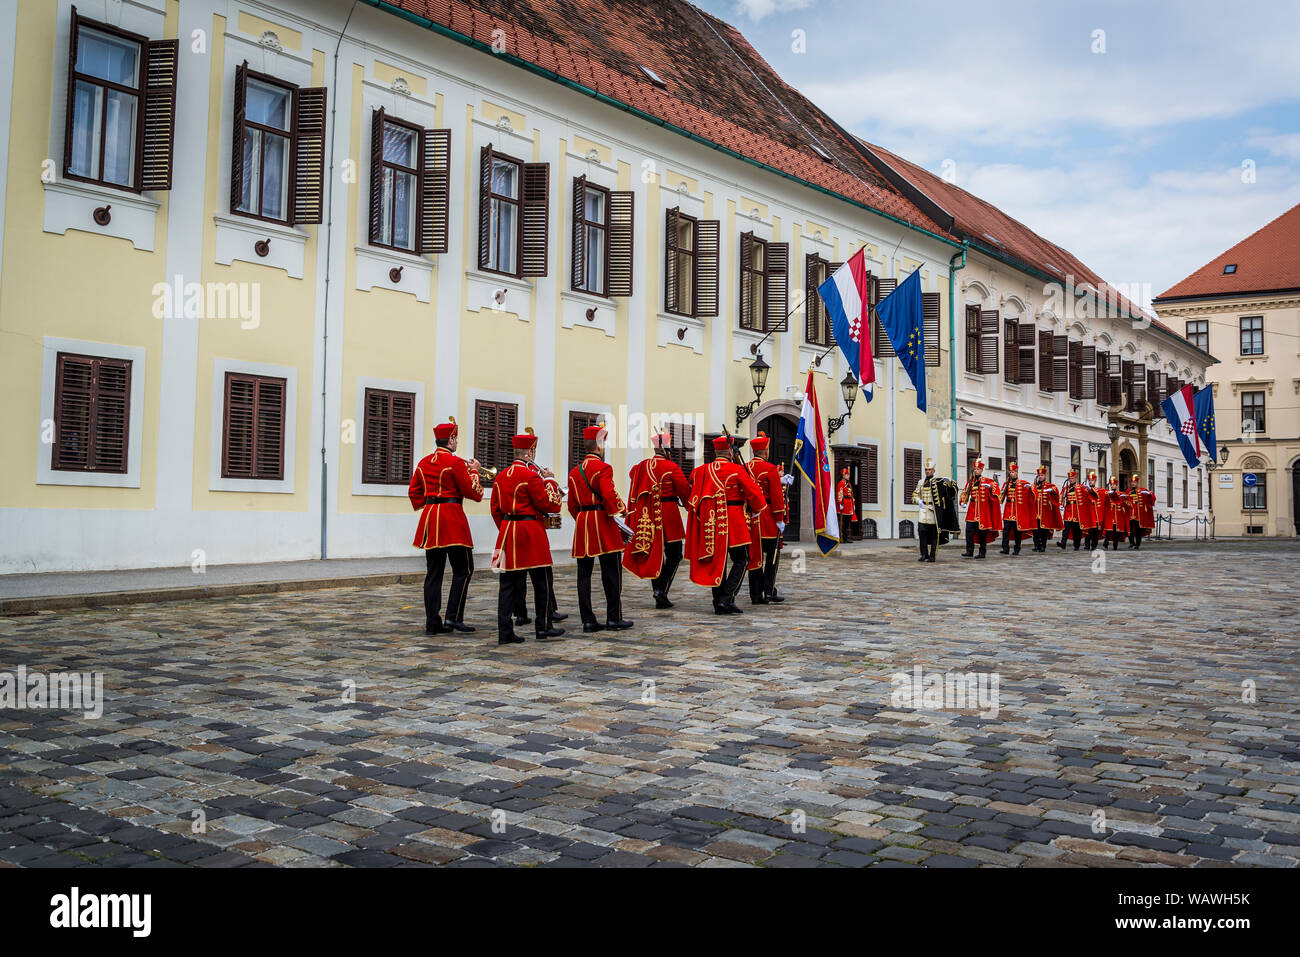 La relève de la garde, des soldats croates en regalia historique en cérémonie à la place St Marc, Zagreb, Croatie Banque D'Images